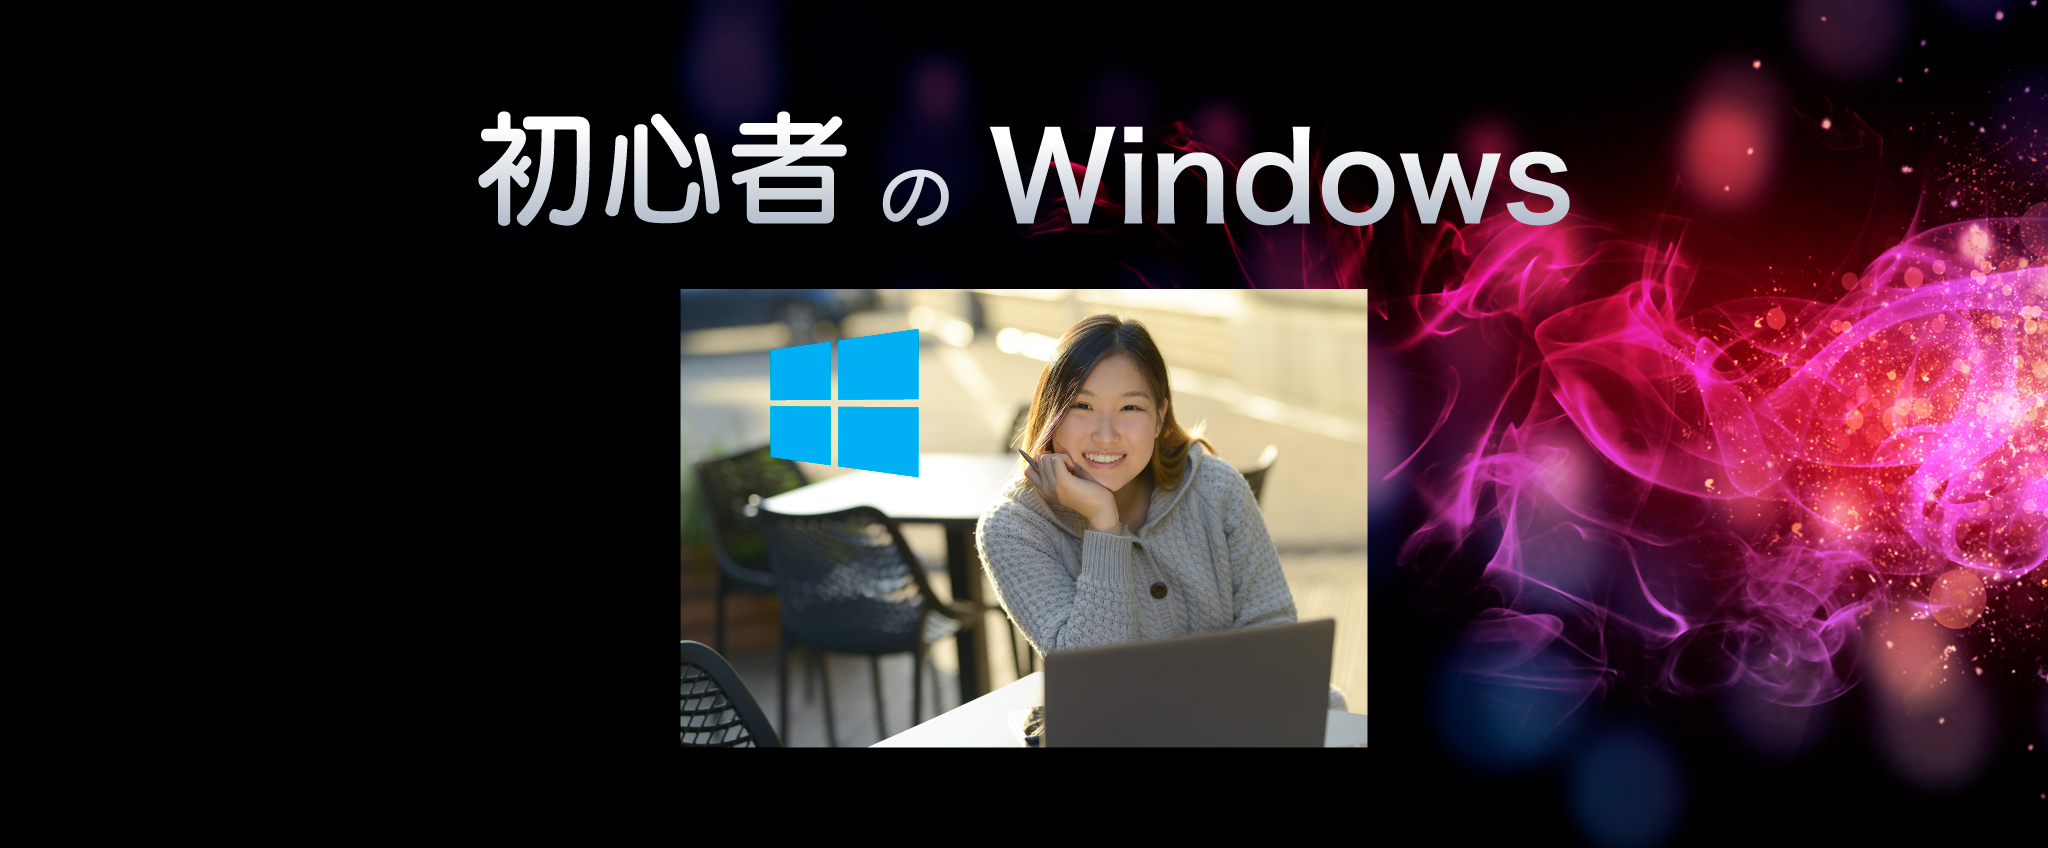 Windows computer course